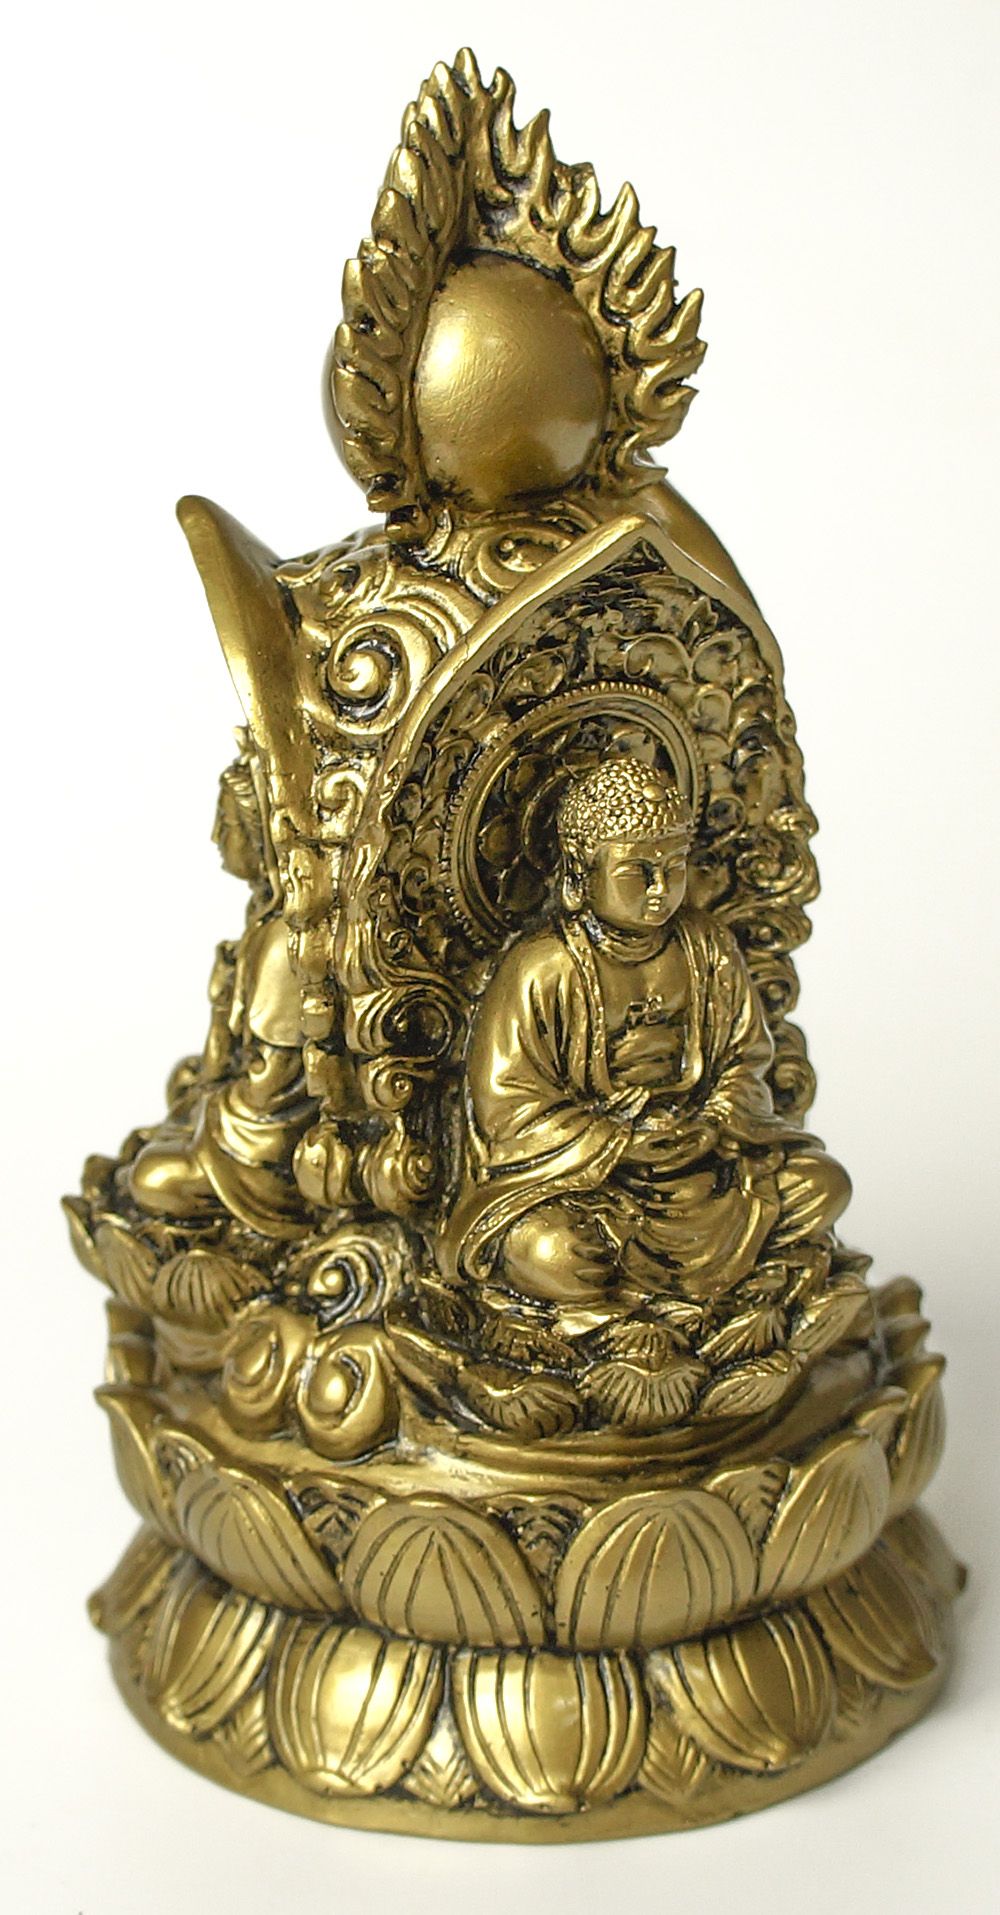 3 Божества на троне (Будда, Гуань Инь, Гуру Римпоче)